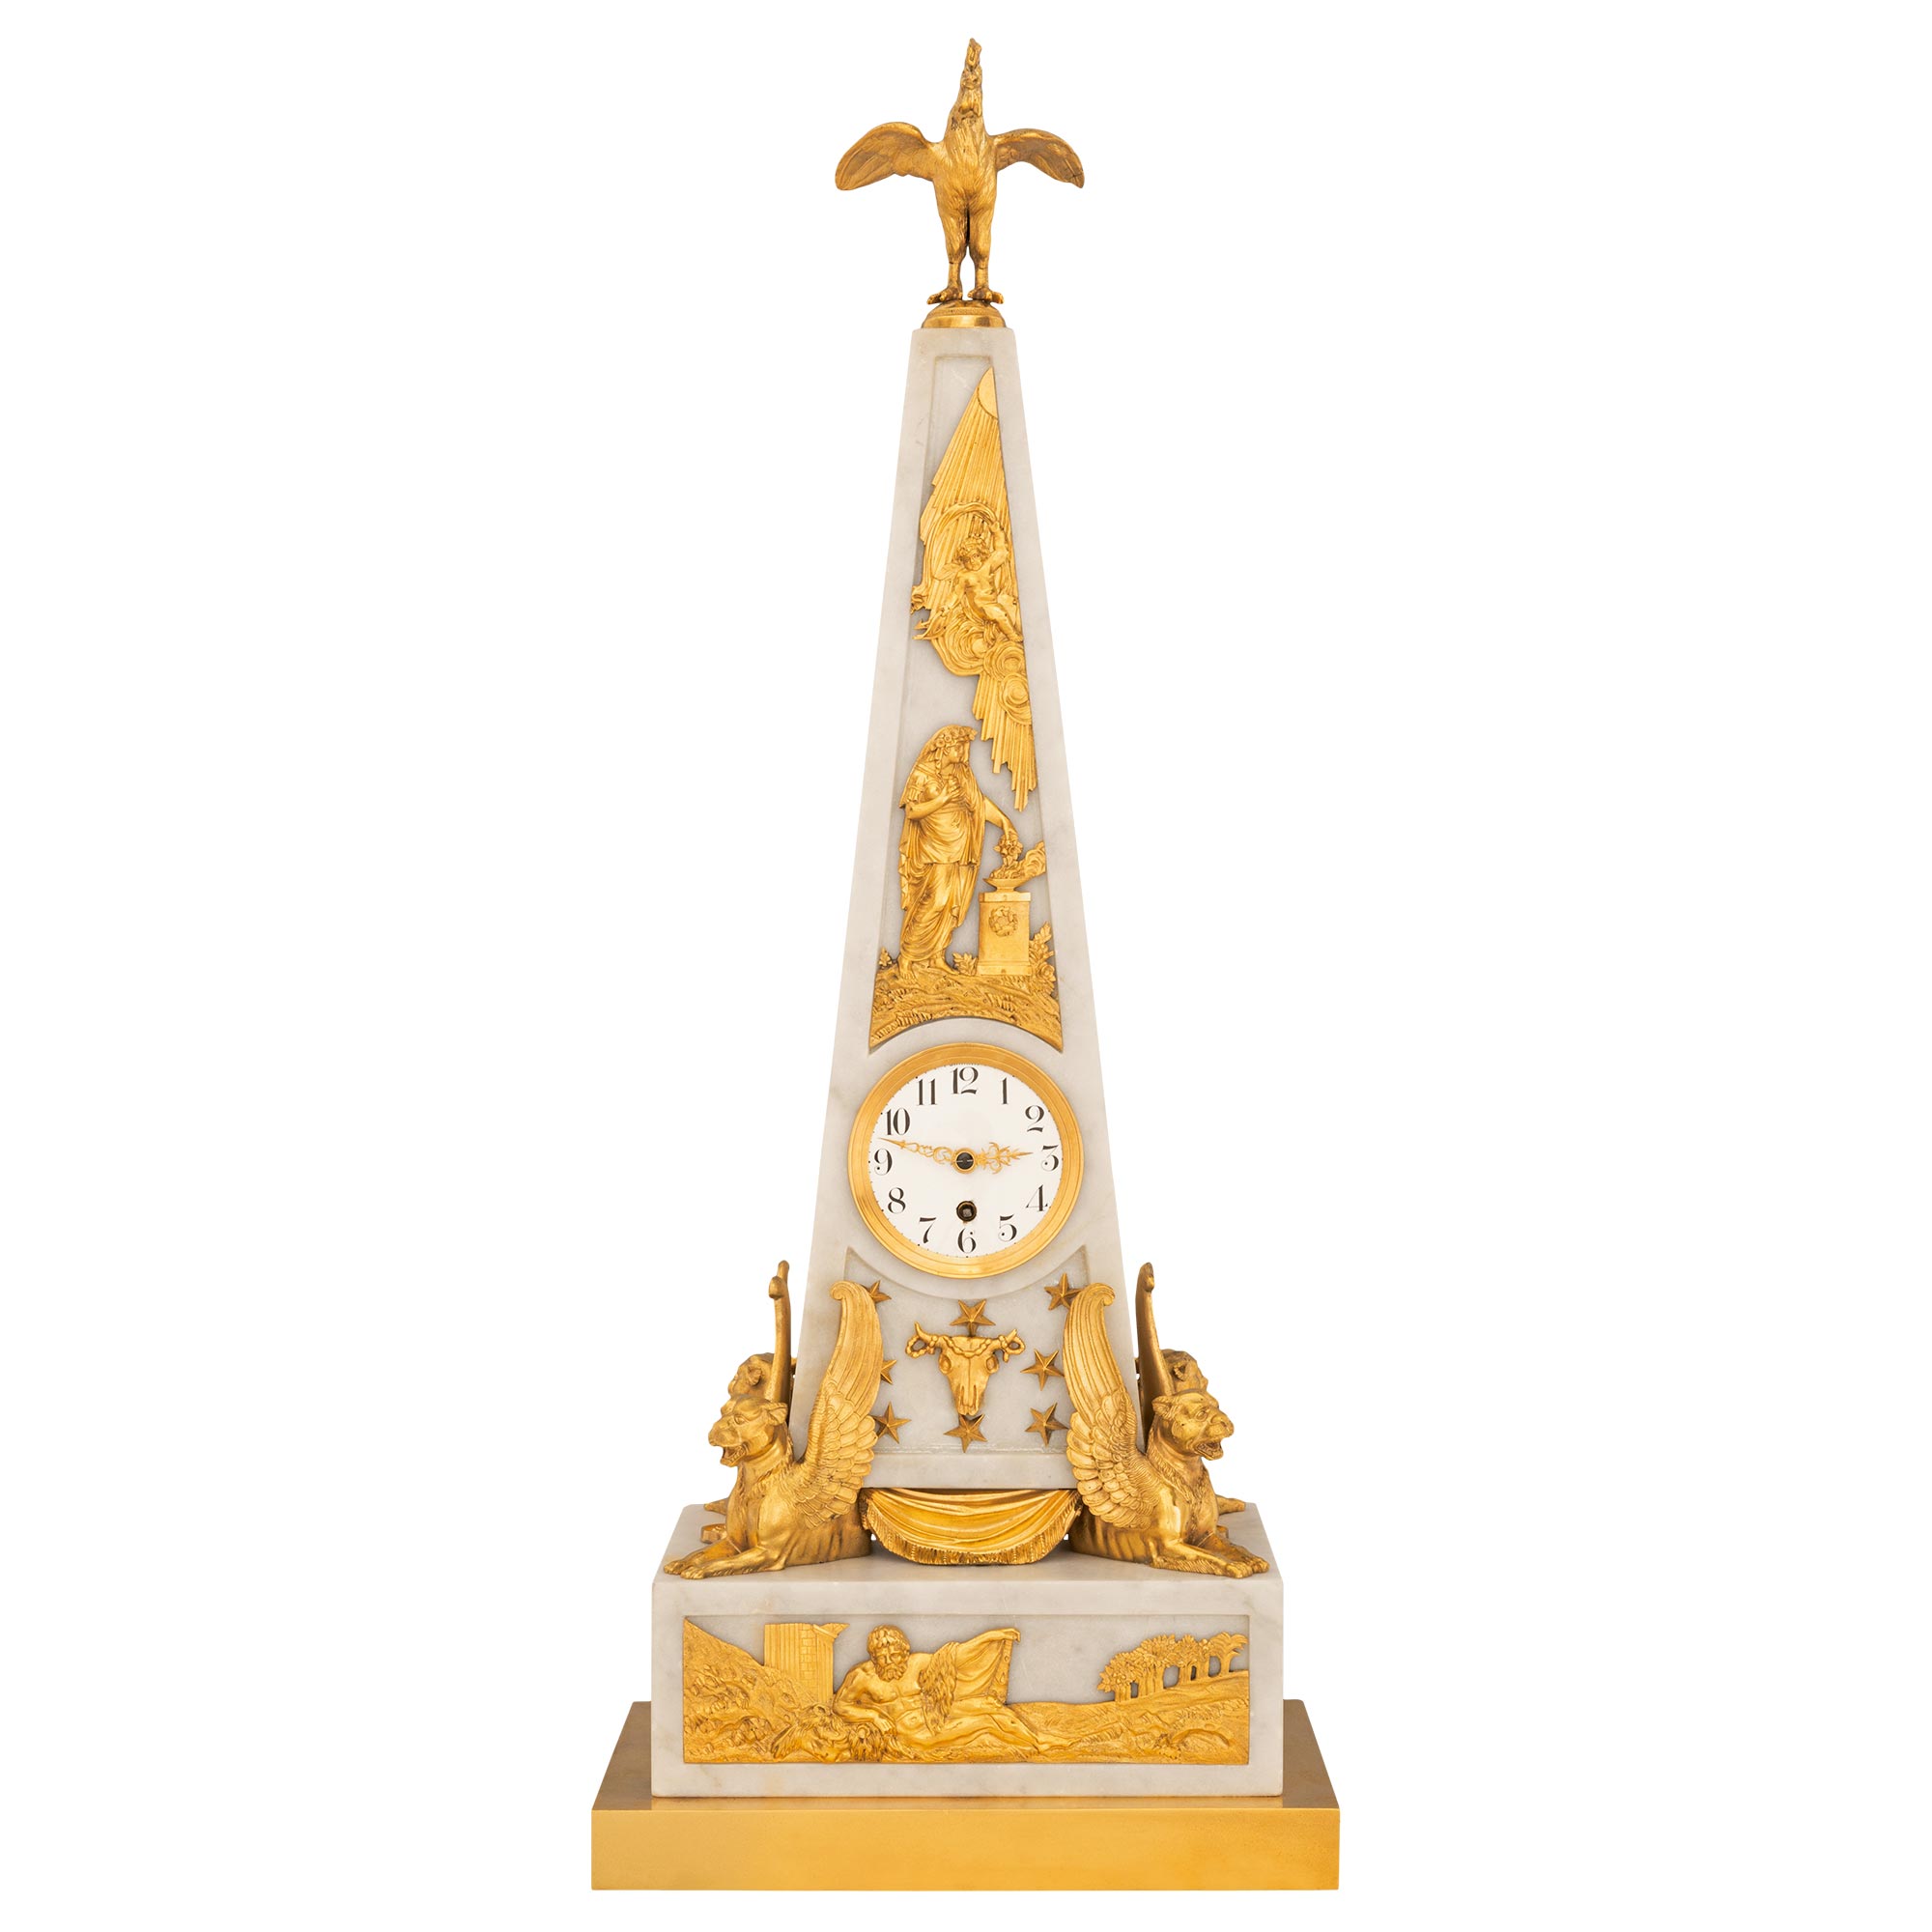 Neoklassizistische obeliskförmige Uhr aus Marmor und Goldbronze aus dem 19. Jahrhundert